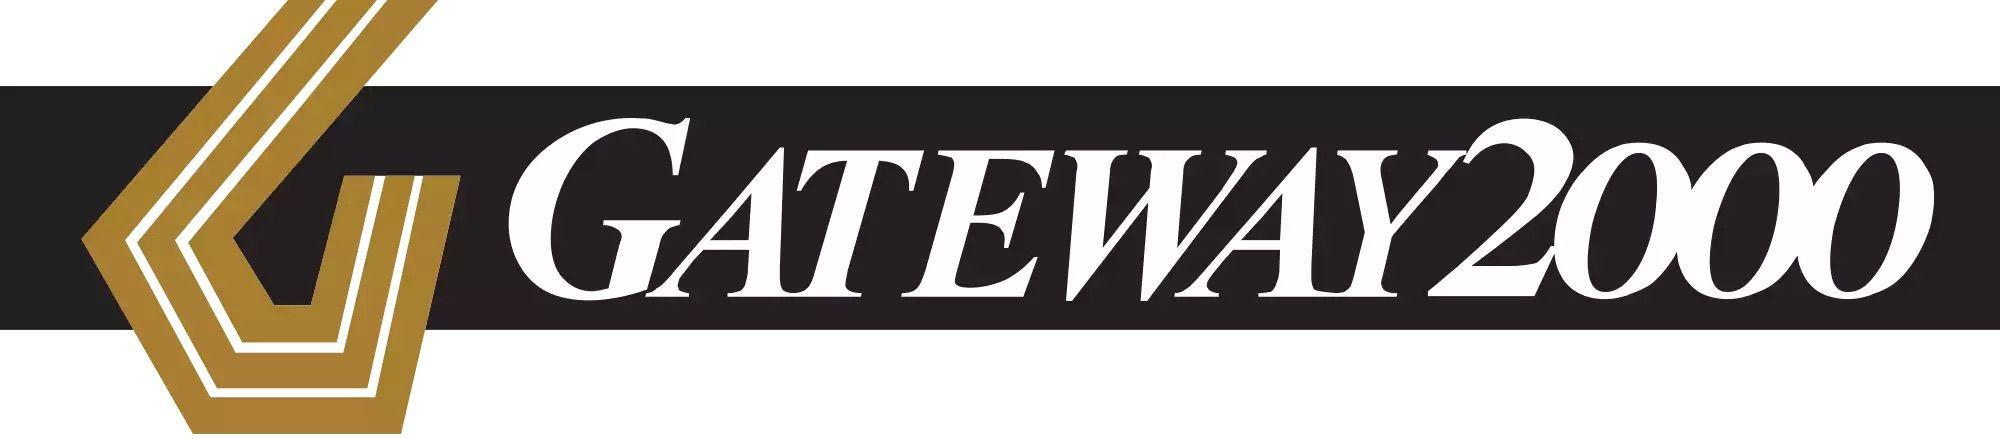 Gateway Logo - This Gateway 2000 logo : nostalgia